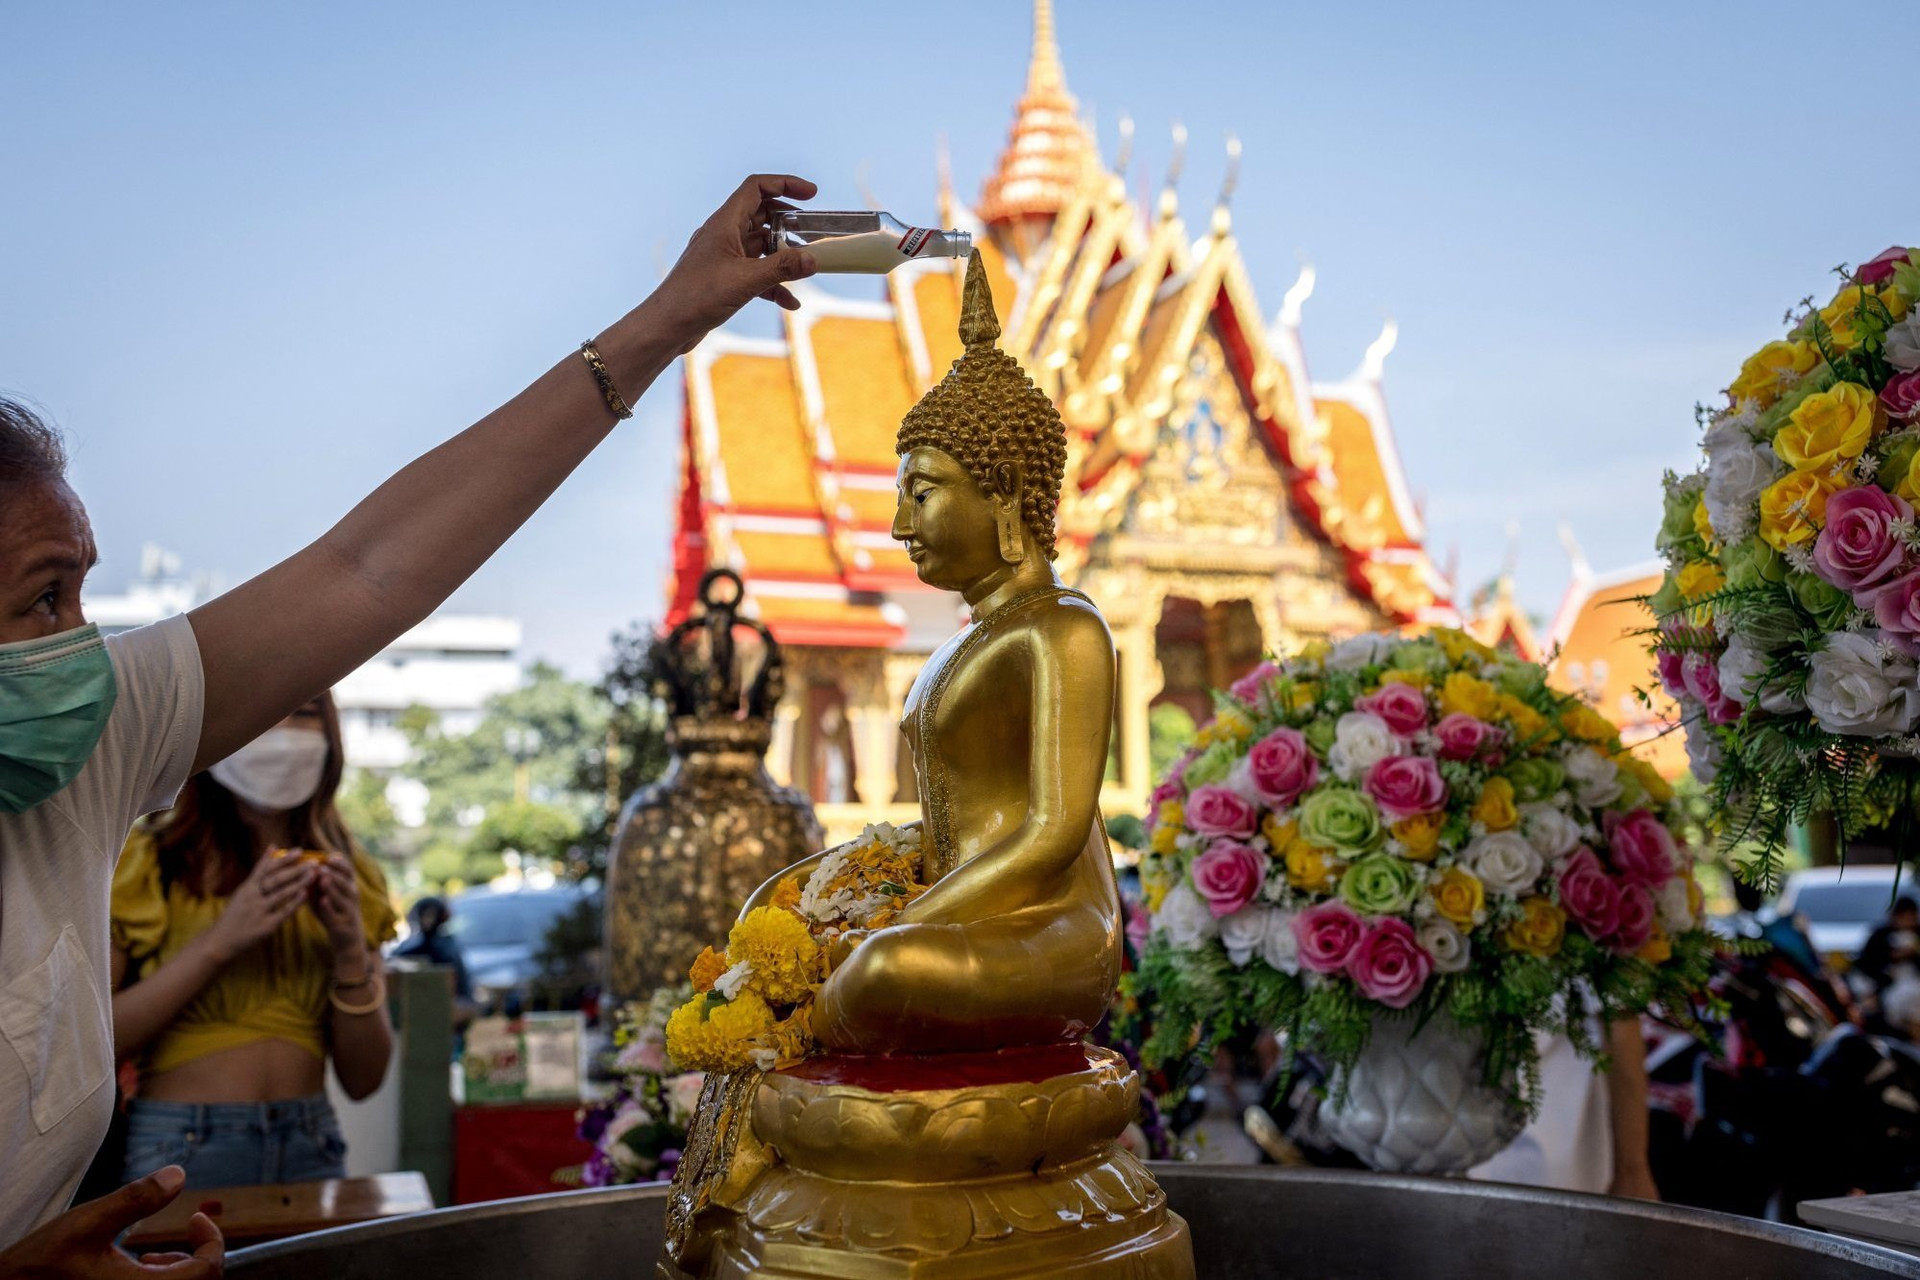 Người dân Thái Lan té nước lên tượng Phật trong dịp lễ Songkran để gột rửa những điều xui xẻo tích tụ trong năm trước.